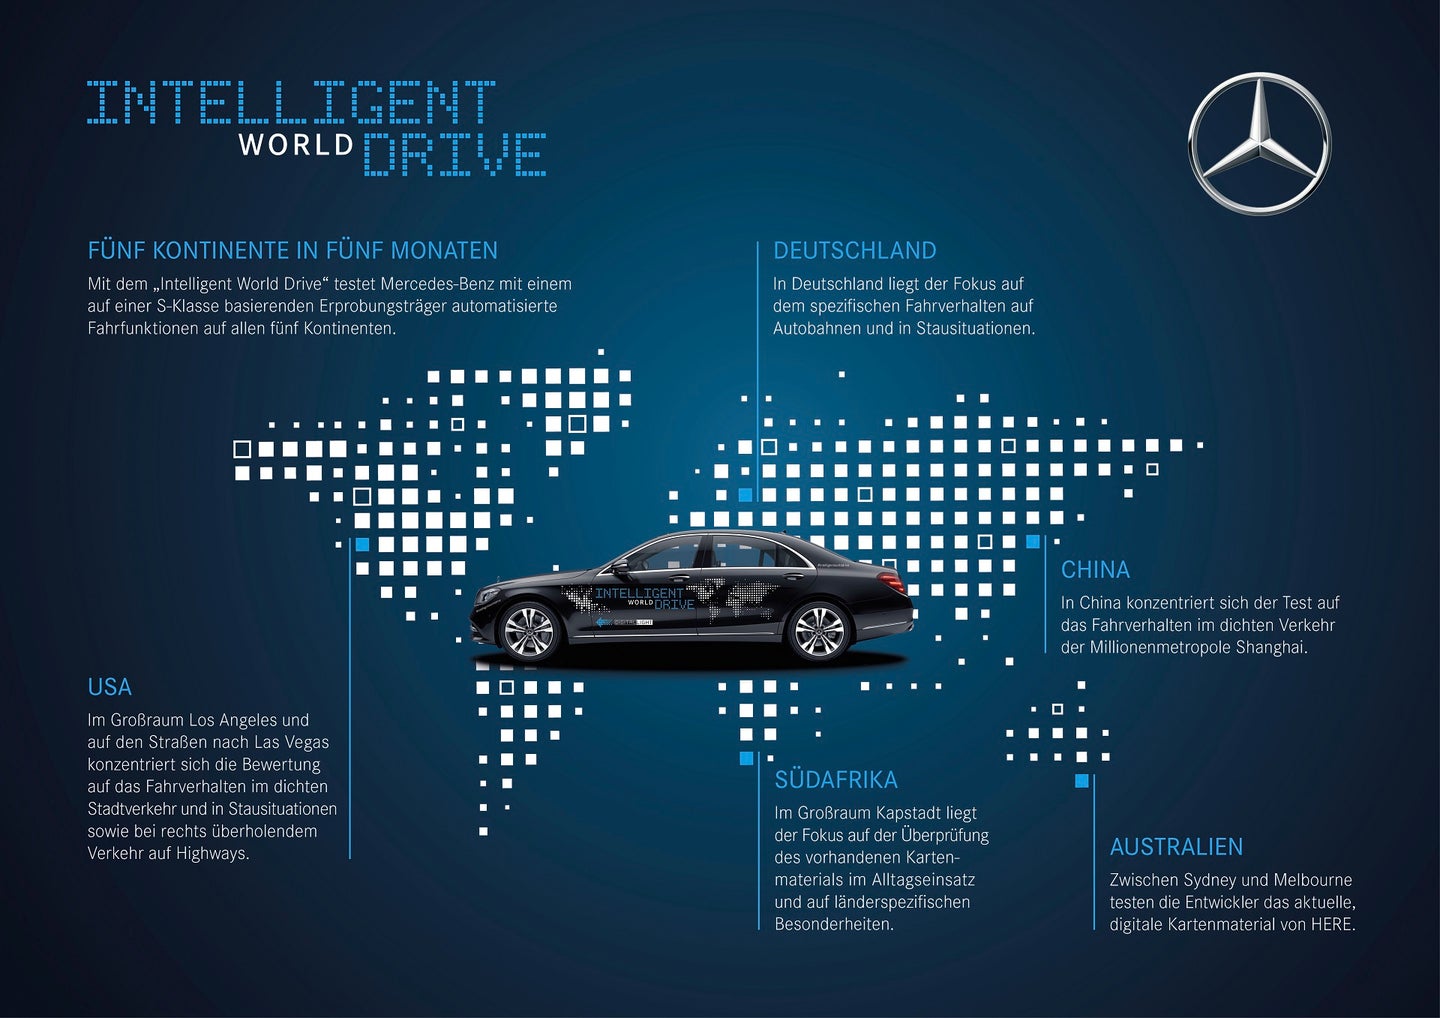 Mercedes ‘Intelligent World Drive’ Tests Autonomous Tech on 5 Continents